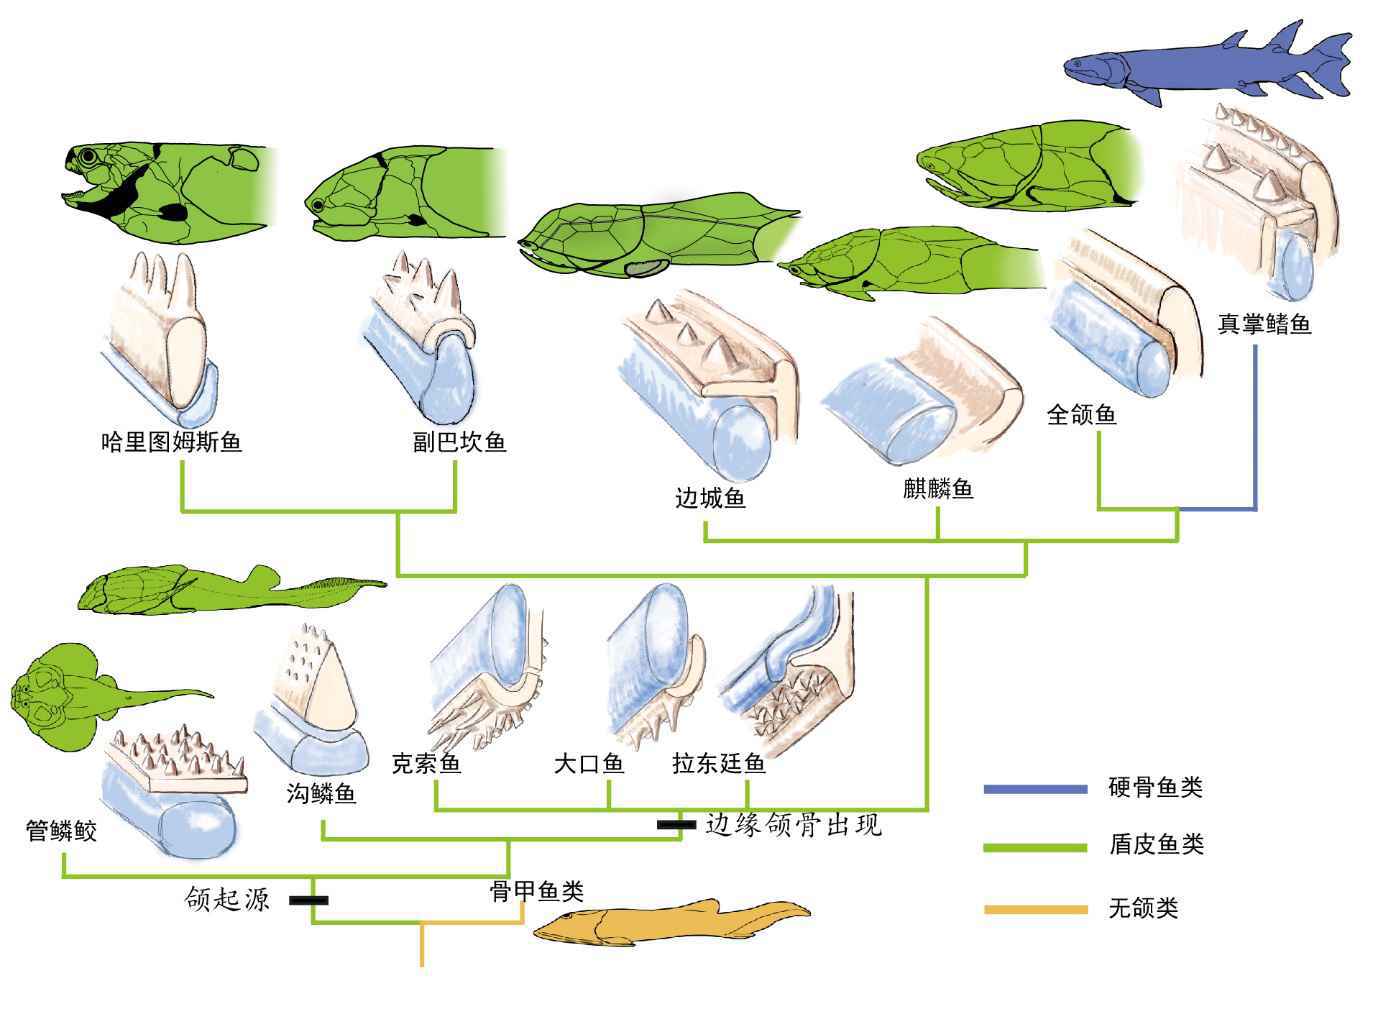 志留纪袖珍边城鱼：为颌与牙齿早期演化提供重要实证